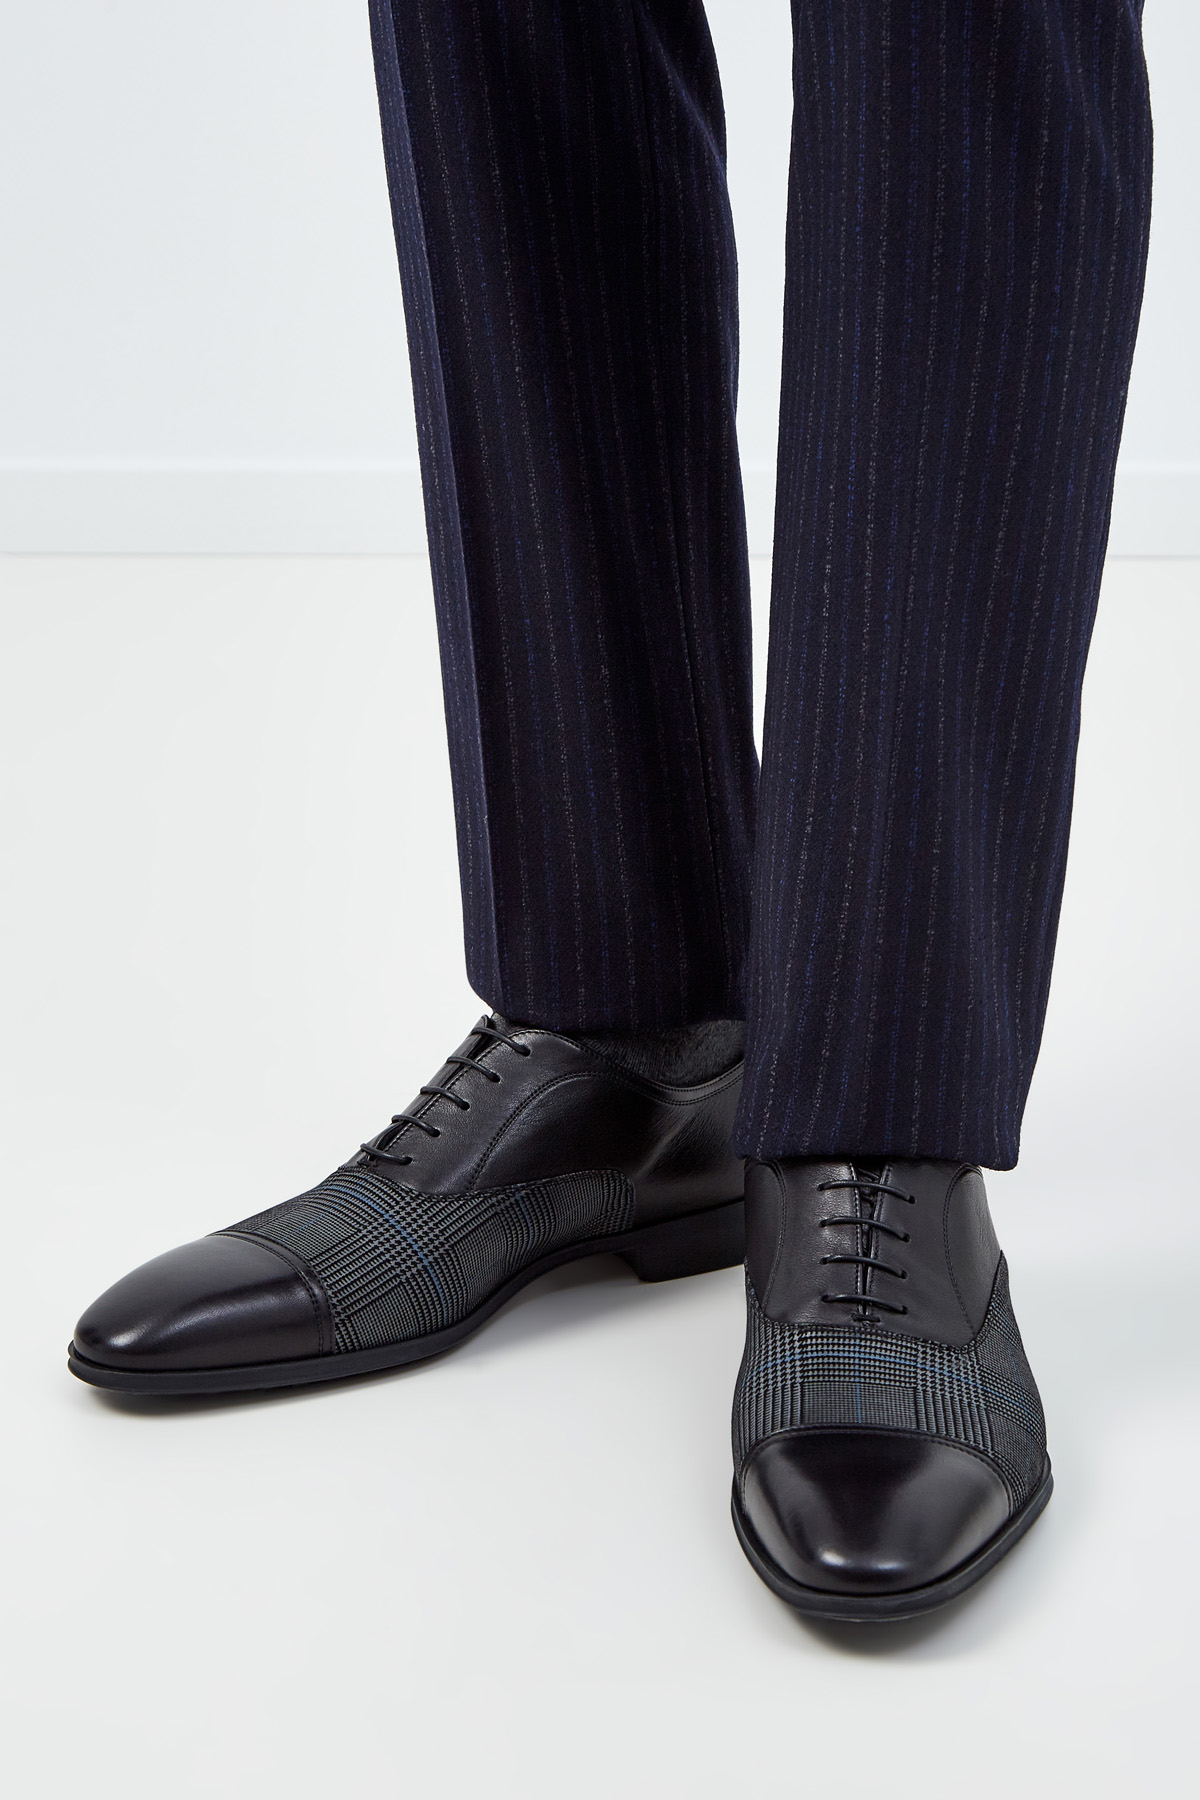 Туфли из кожи и ткани с принтом «Принц Уэльский» MORESCHI, цвет мульти, размер 40.5 - фото 2